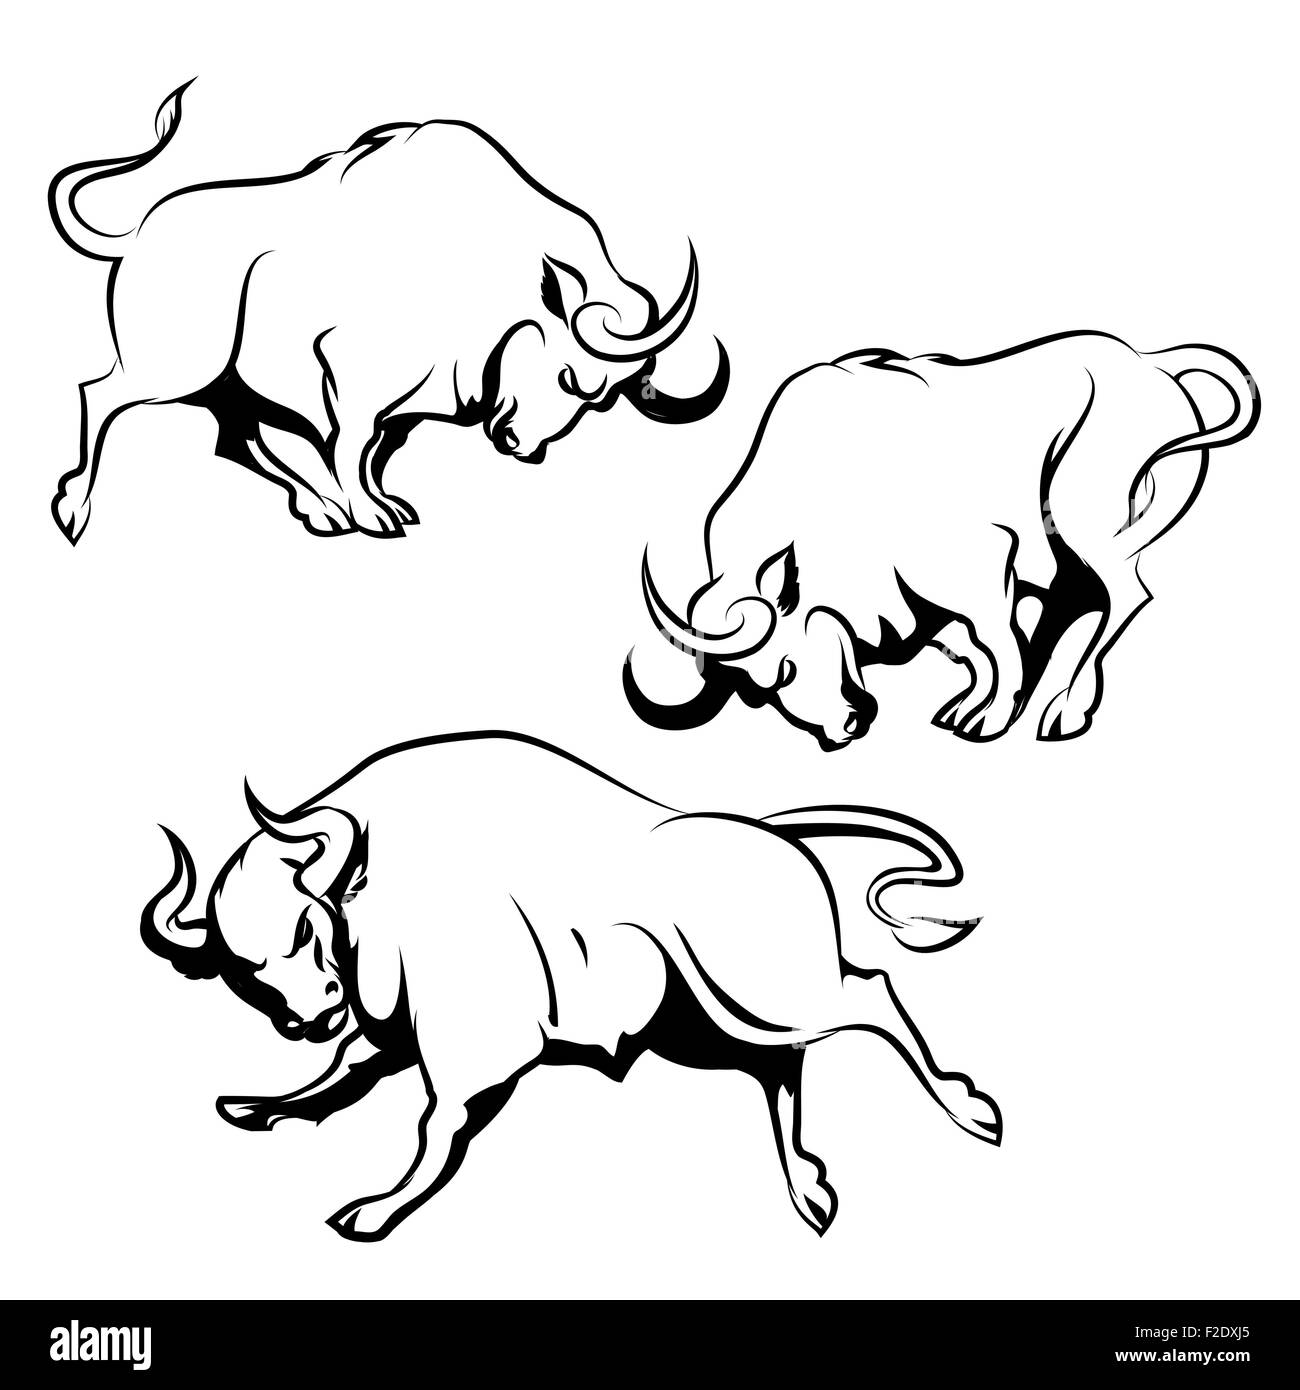 Bull segno o emblema set. Esecuzione di Angry Bull in diverse pose. Isolato su sfondo bianco. Illustrazione Vettoriale